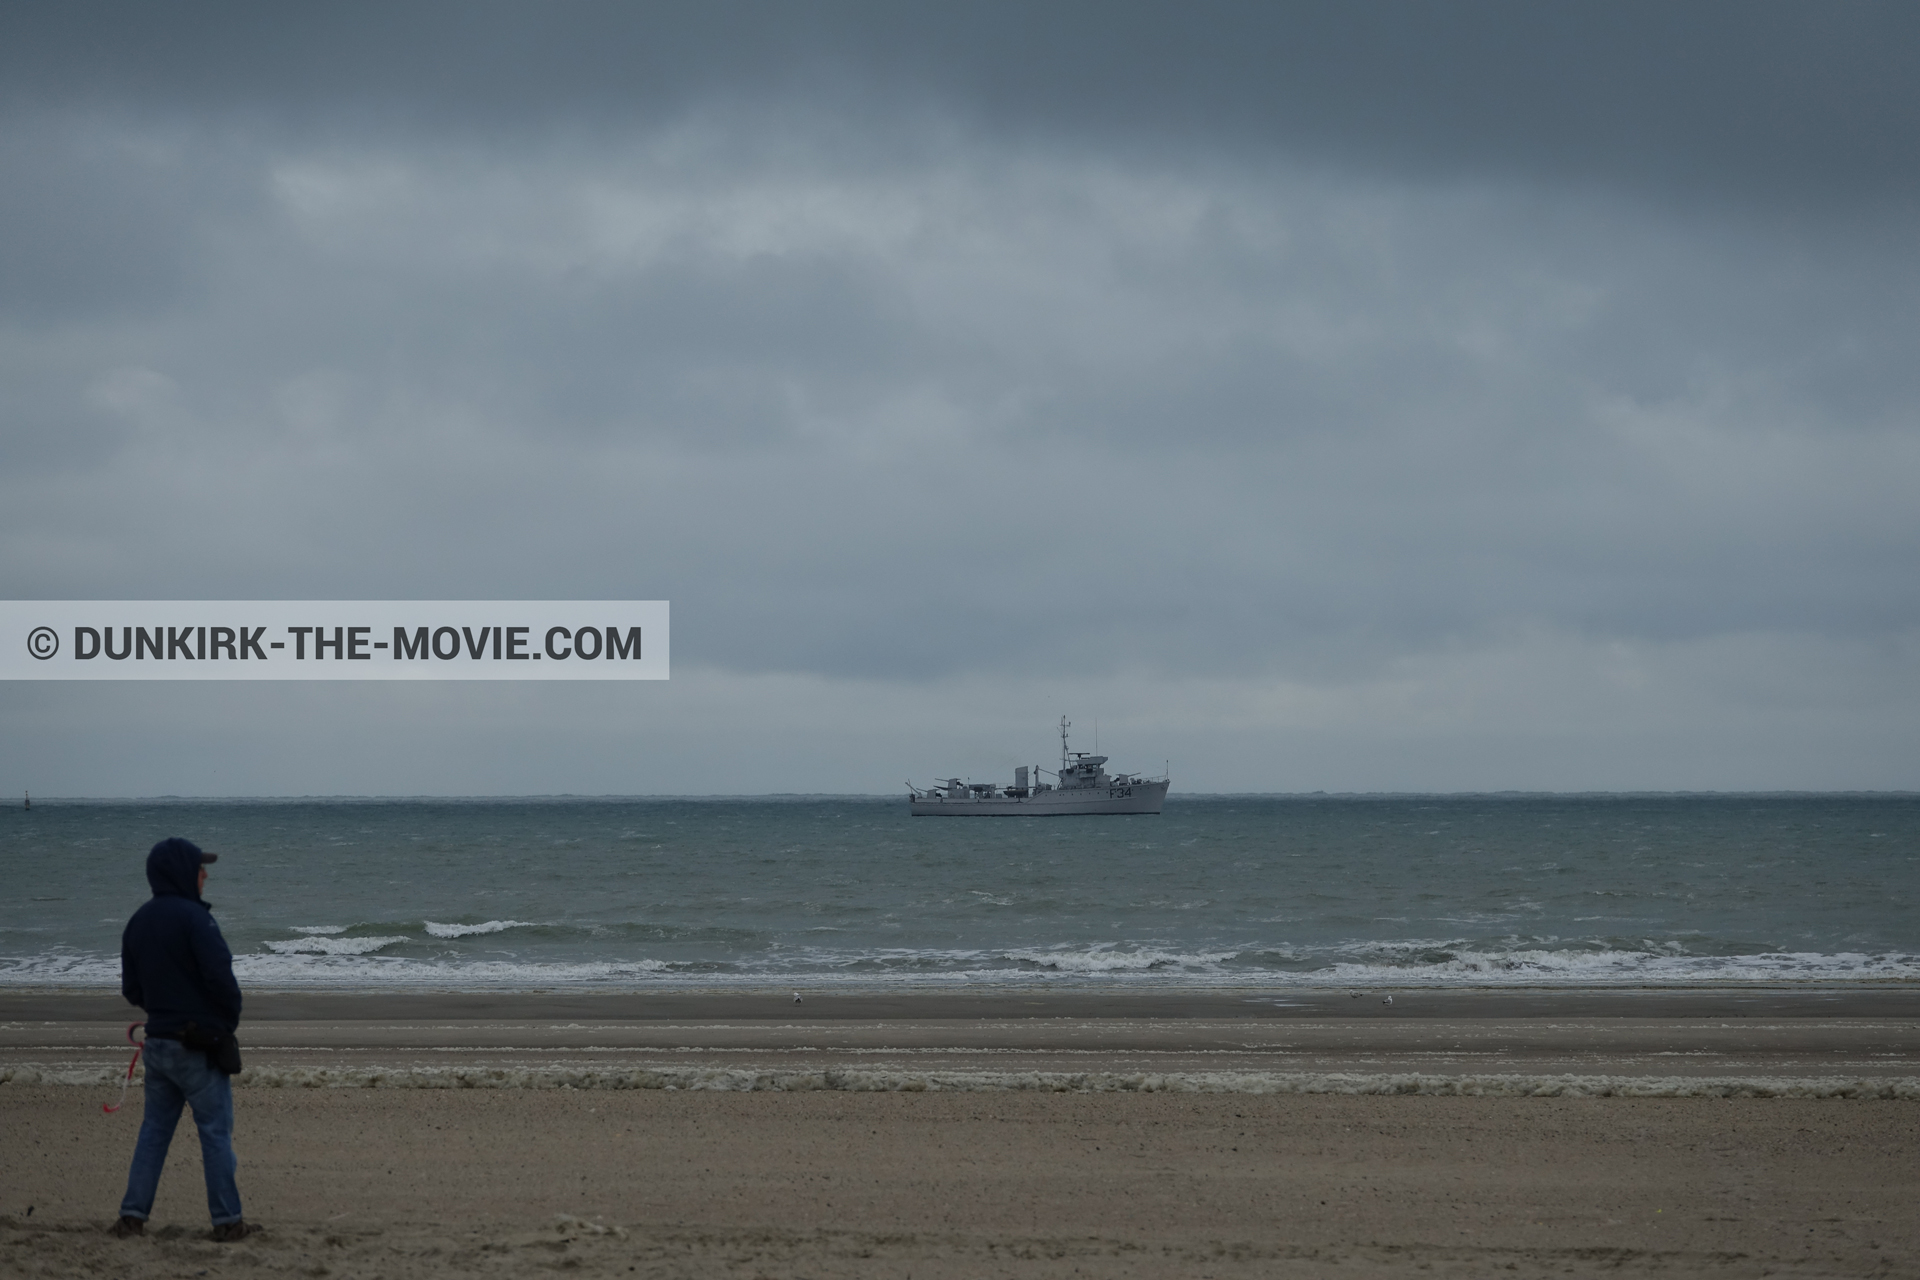 Fotos con barco, cielo nublado, F34 - Hr.Ms. Sittard, playa, equipo técnica,  durante el rodaje de la película Dunkerque de Nolan